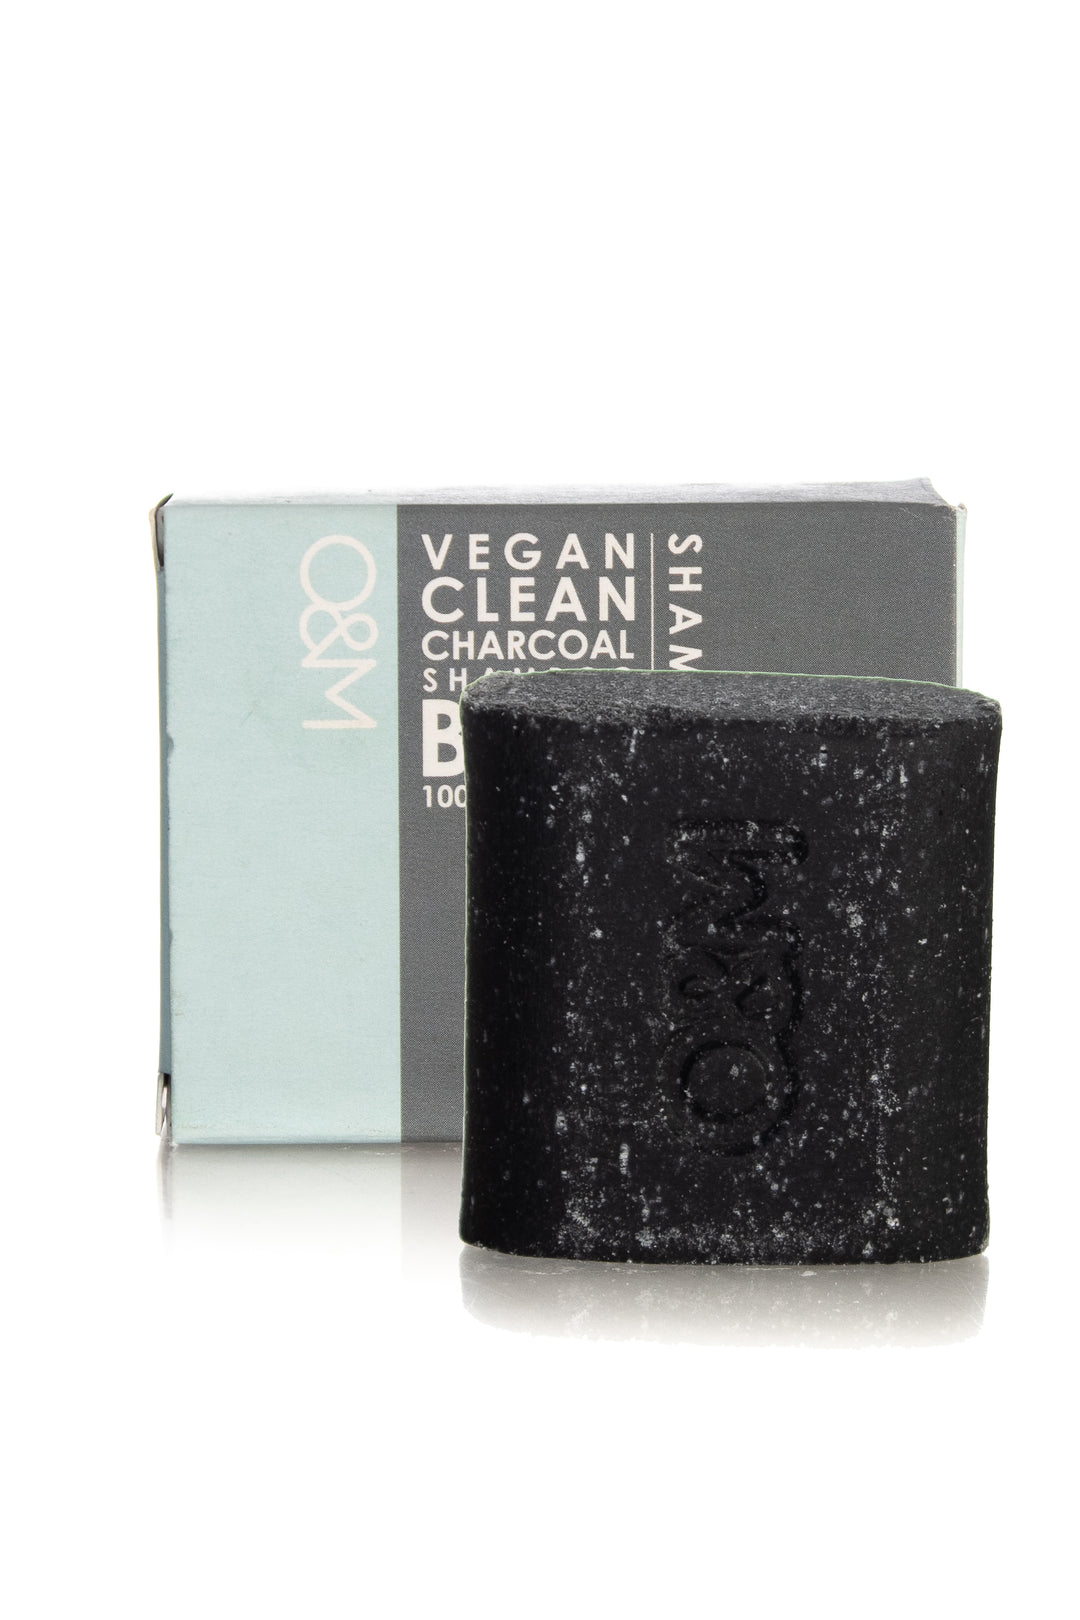 O&M Vegan Clean Shampoo Bar